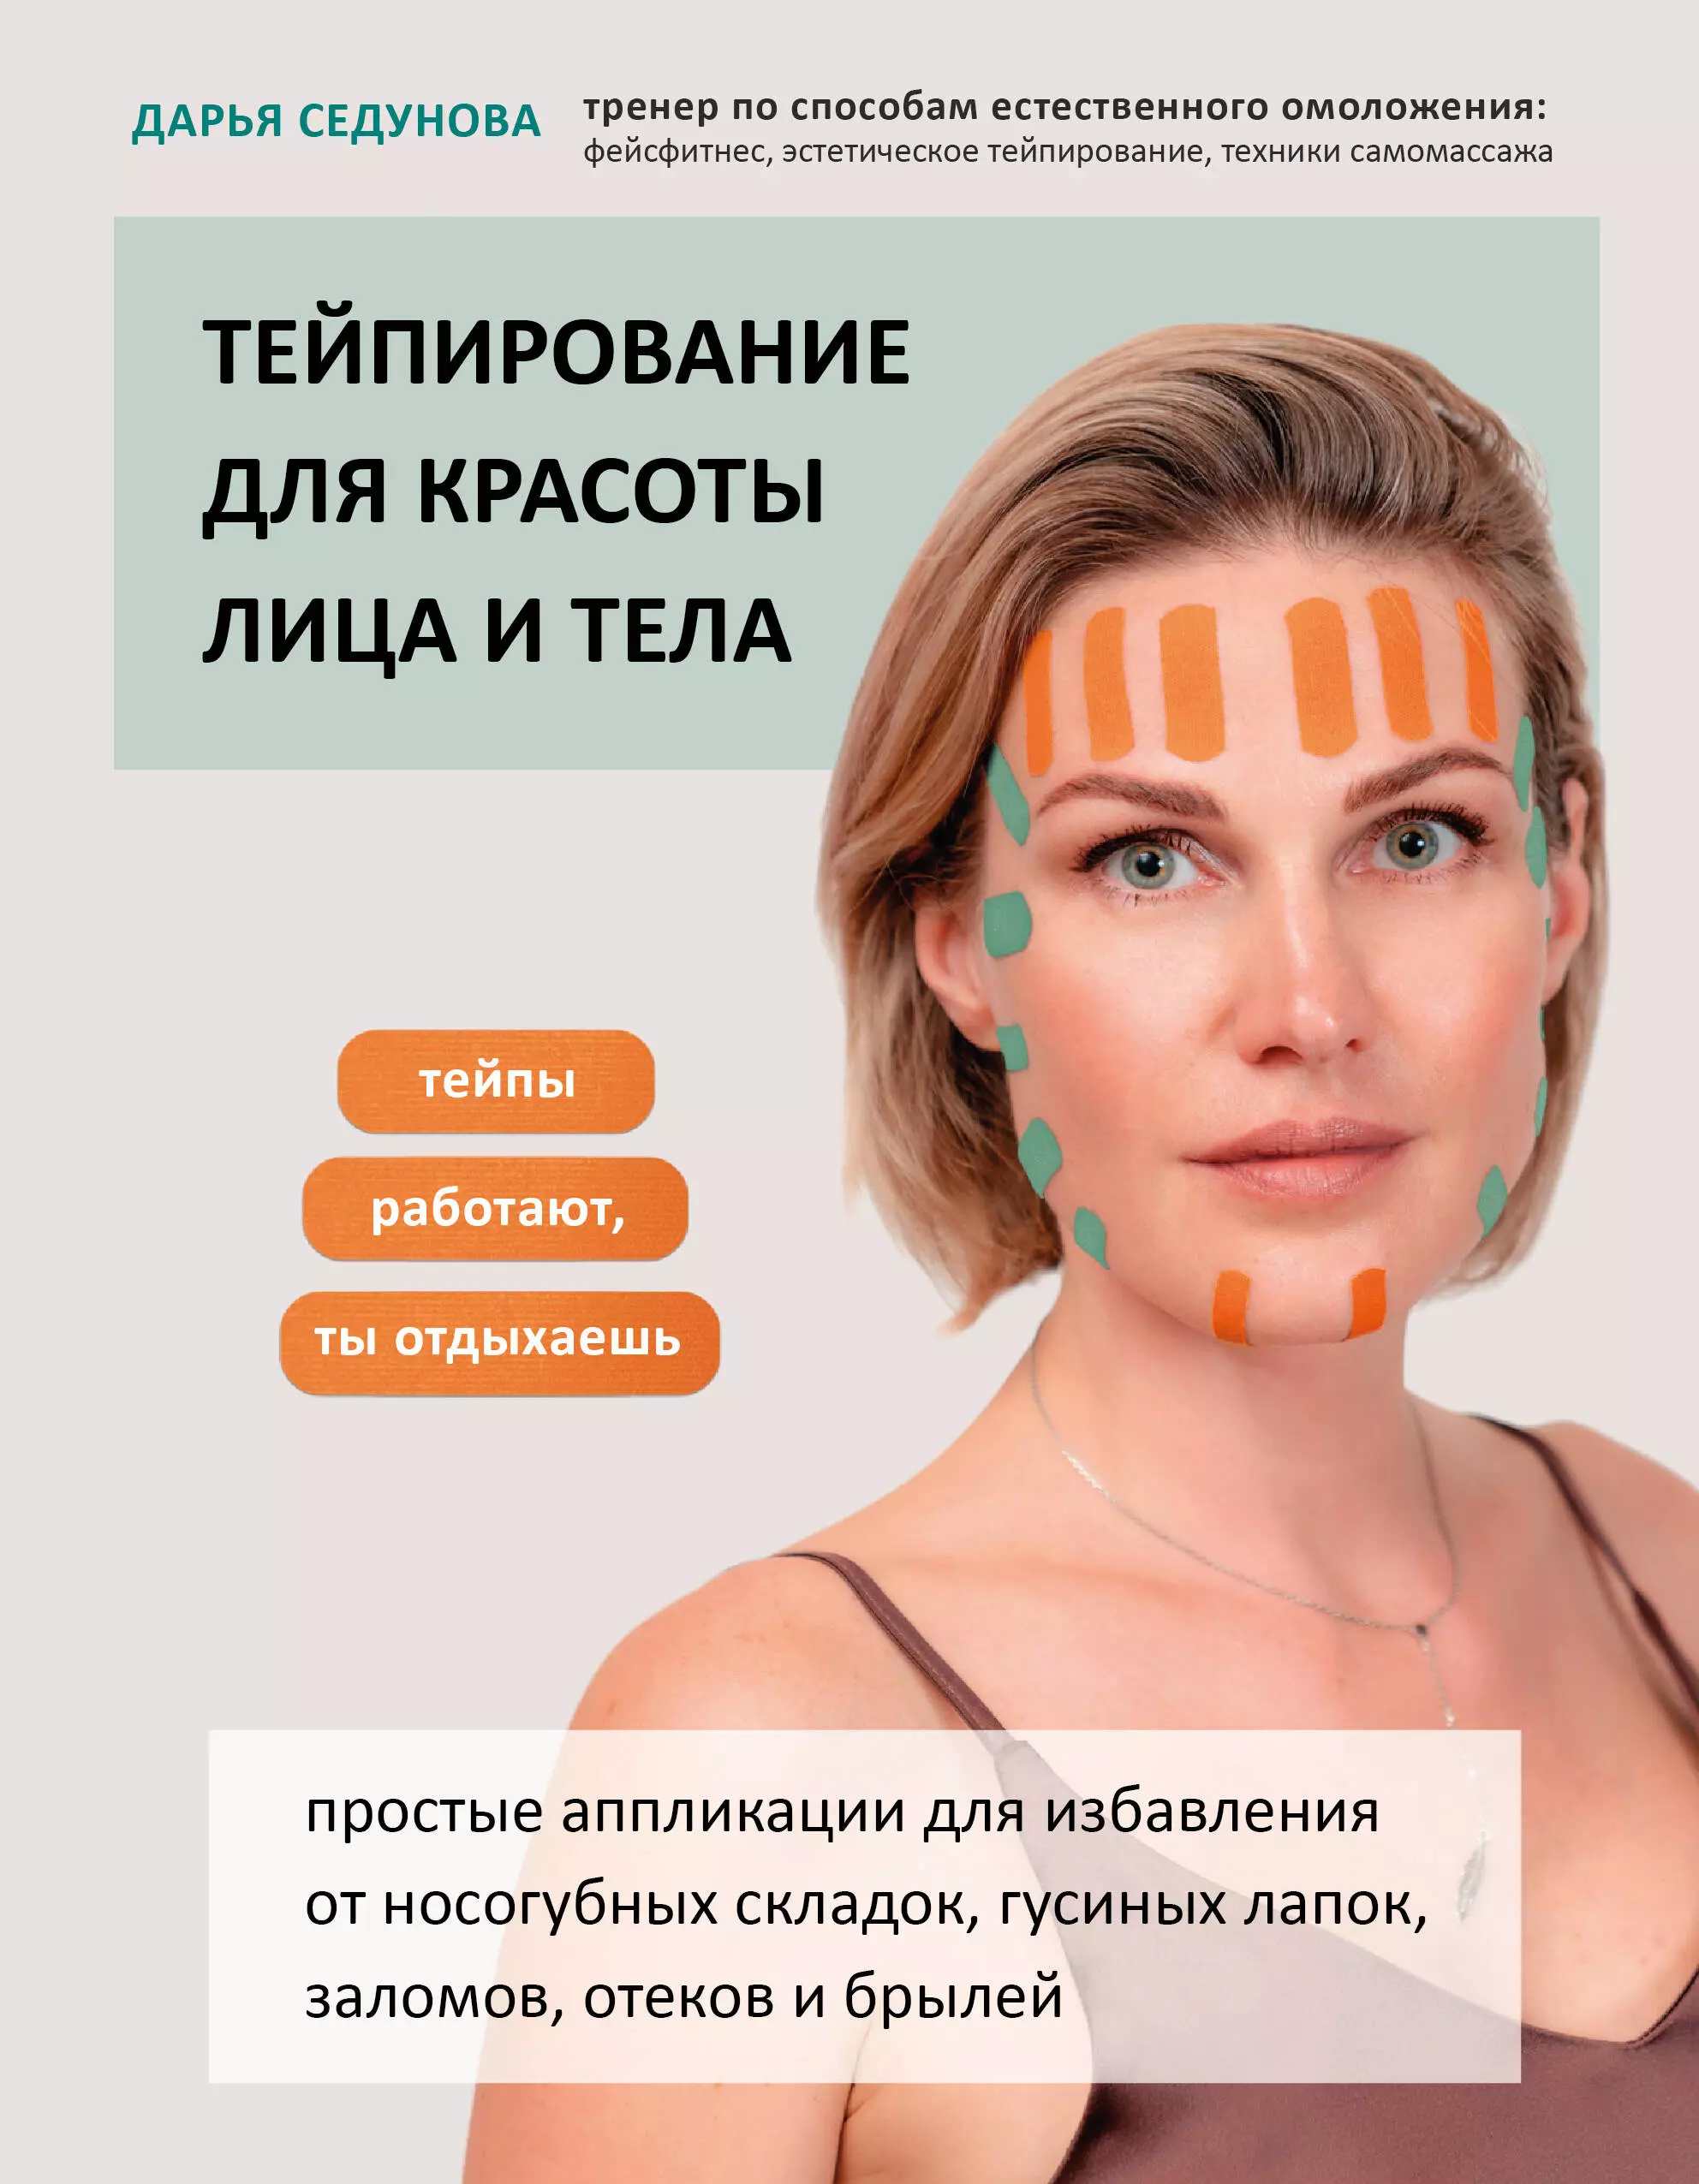 Седунова Дарья Александровна - Тейпирование для красоты лица и тела